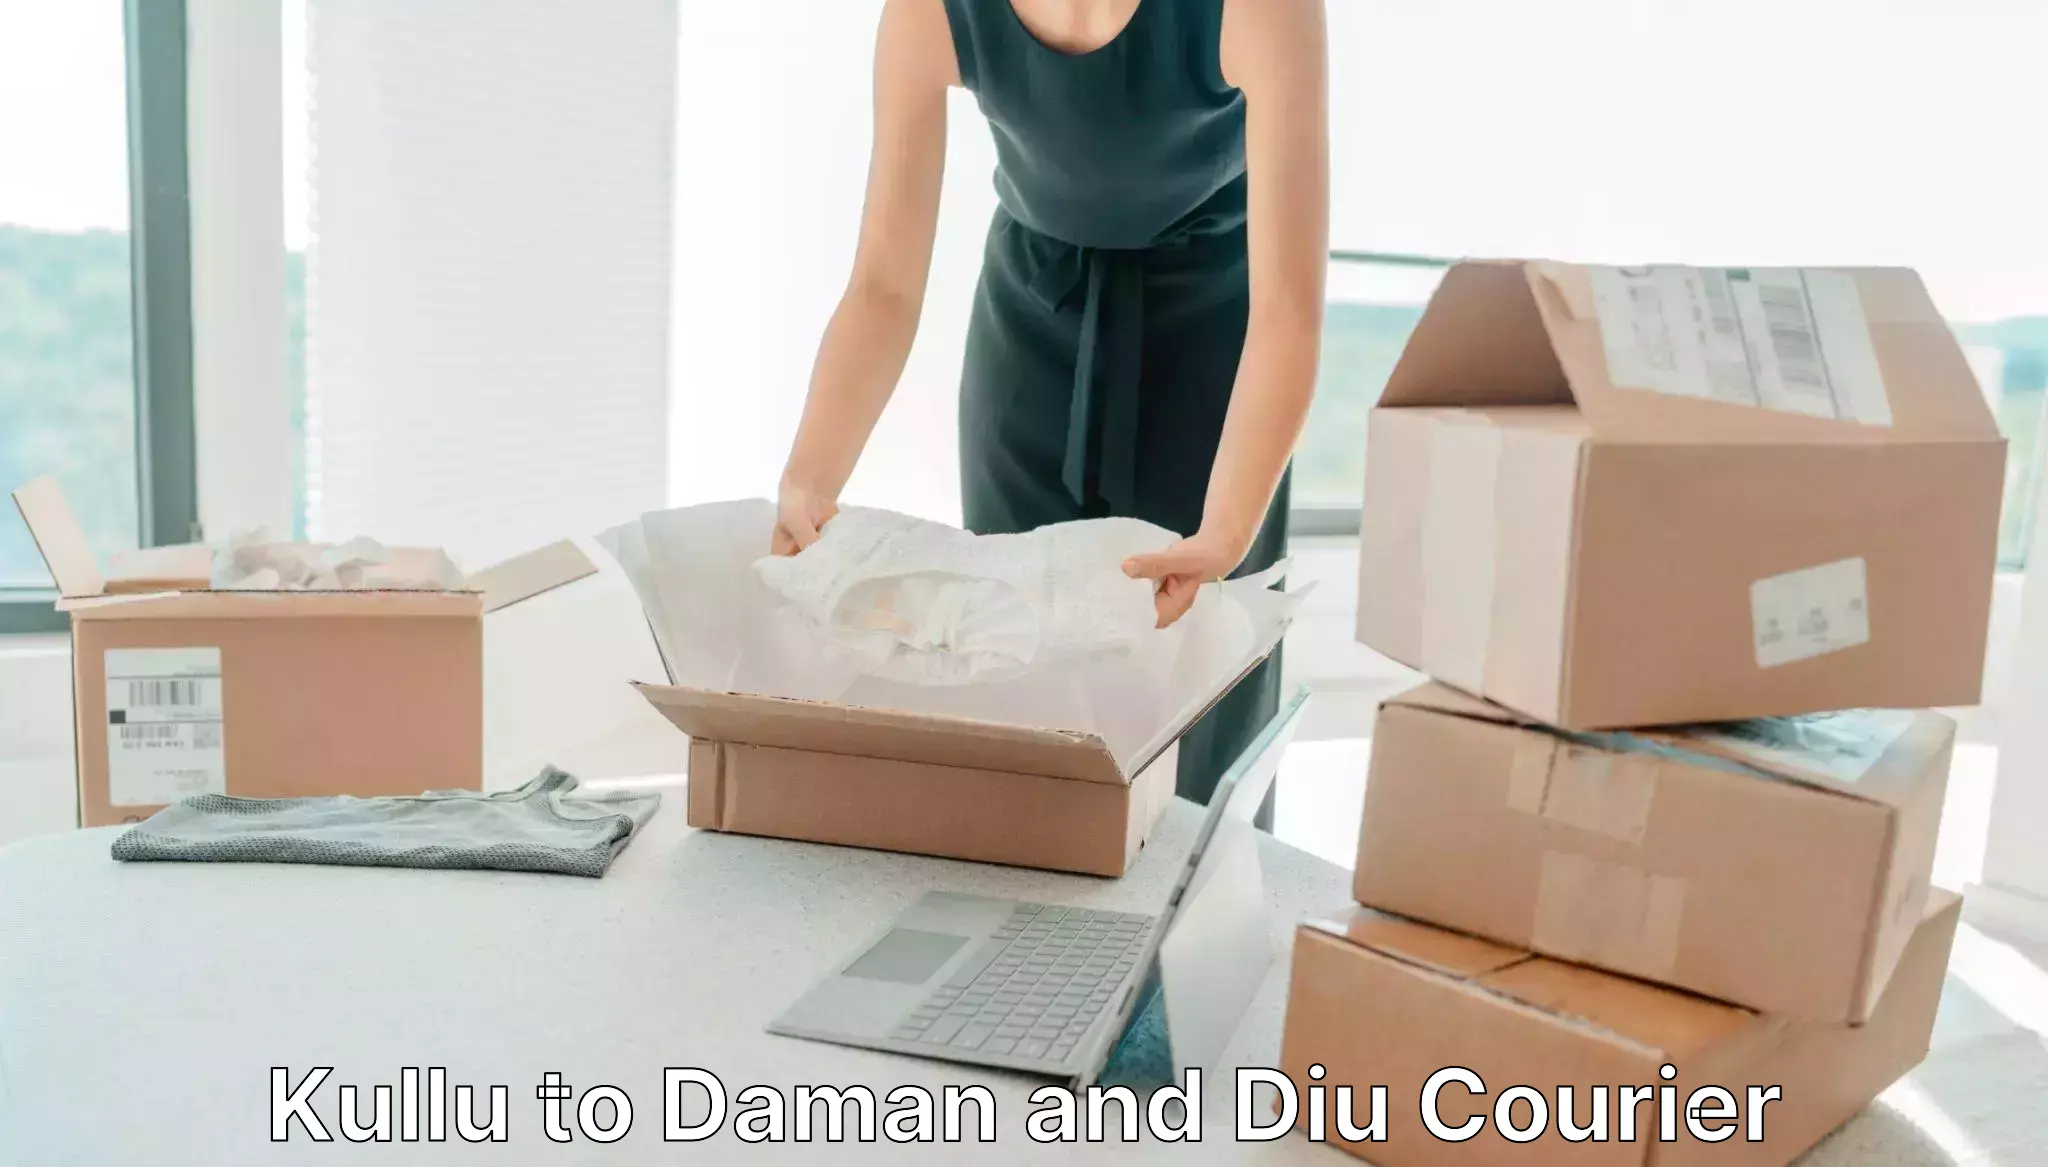 Modern courier technology Kullu to Daman